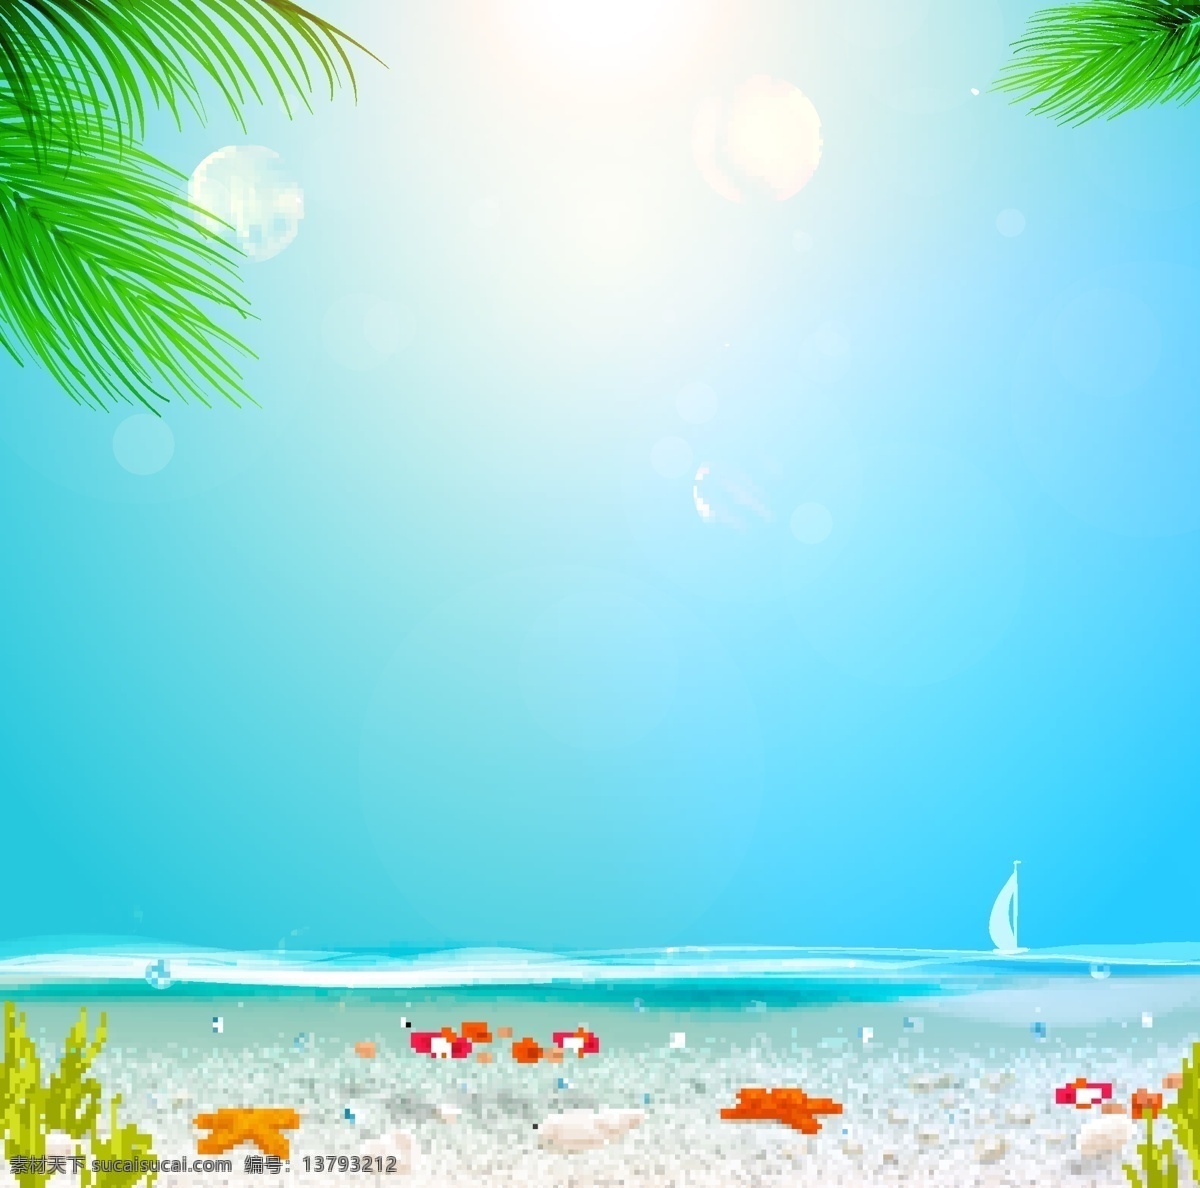 夏日 宣传 海报 设计素材 矢量 背景 花纹 梦幻唯美 沙滩 标牌 海星 帆船 椰子树 底纹边框 背景底纹